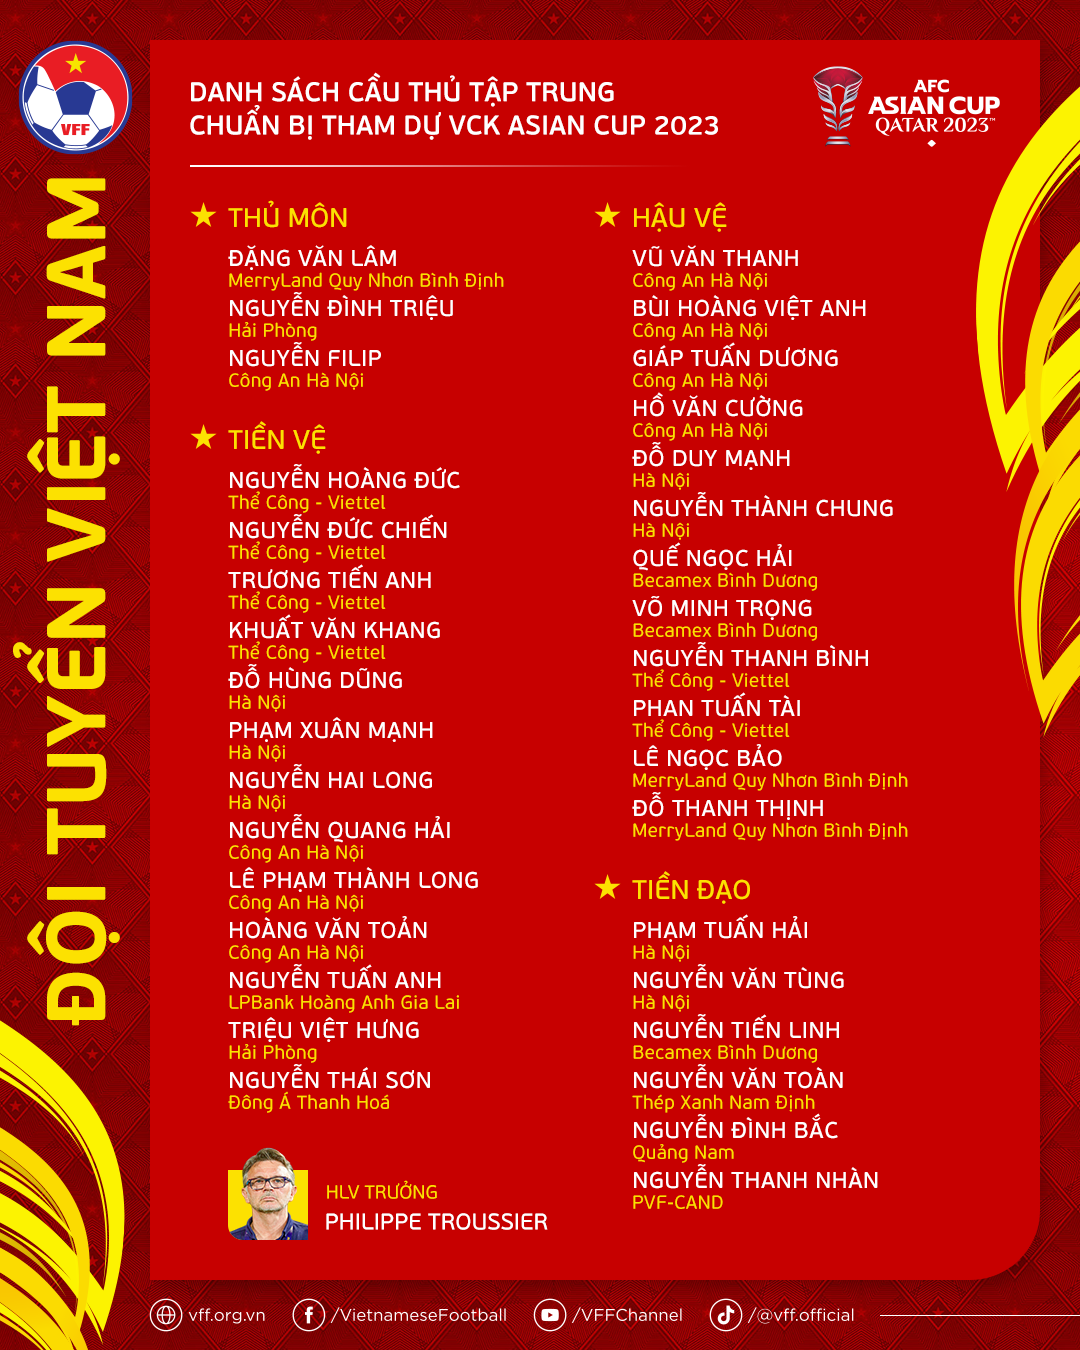 Tham vọng của HLV Troussier nhìn từ danh sách triệu tập cho Asian Cup - Bóng Đá